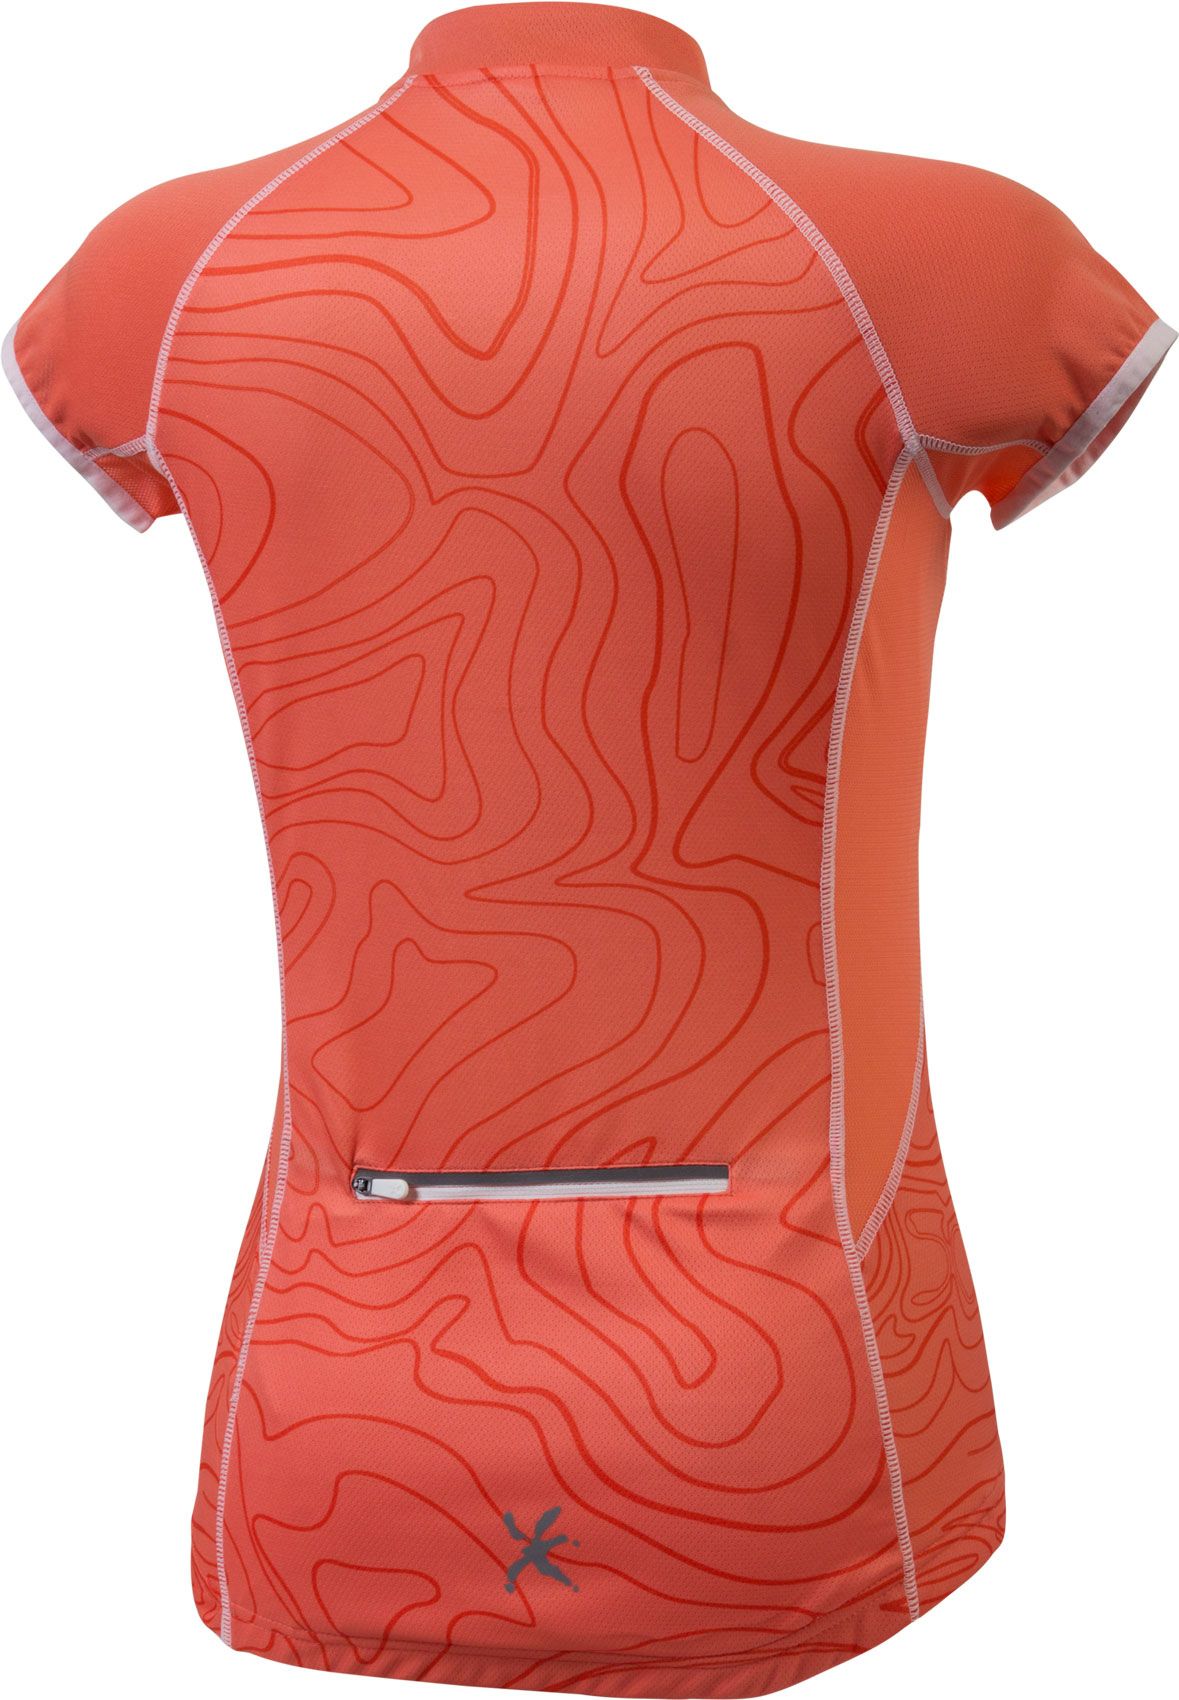 Дамска велосипедна тениска със  сумблимачен  печат